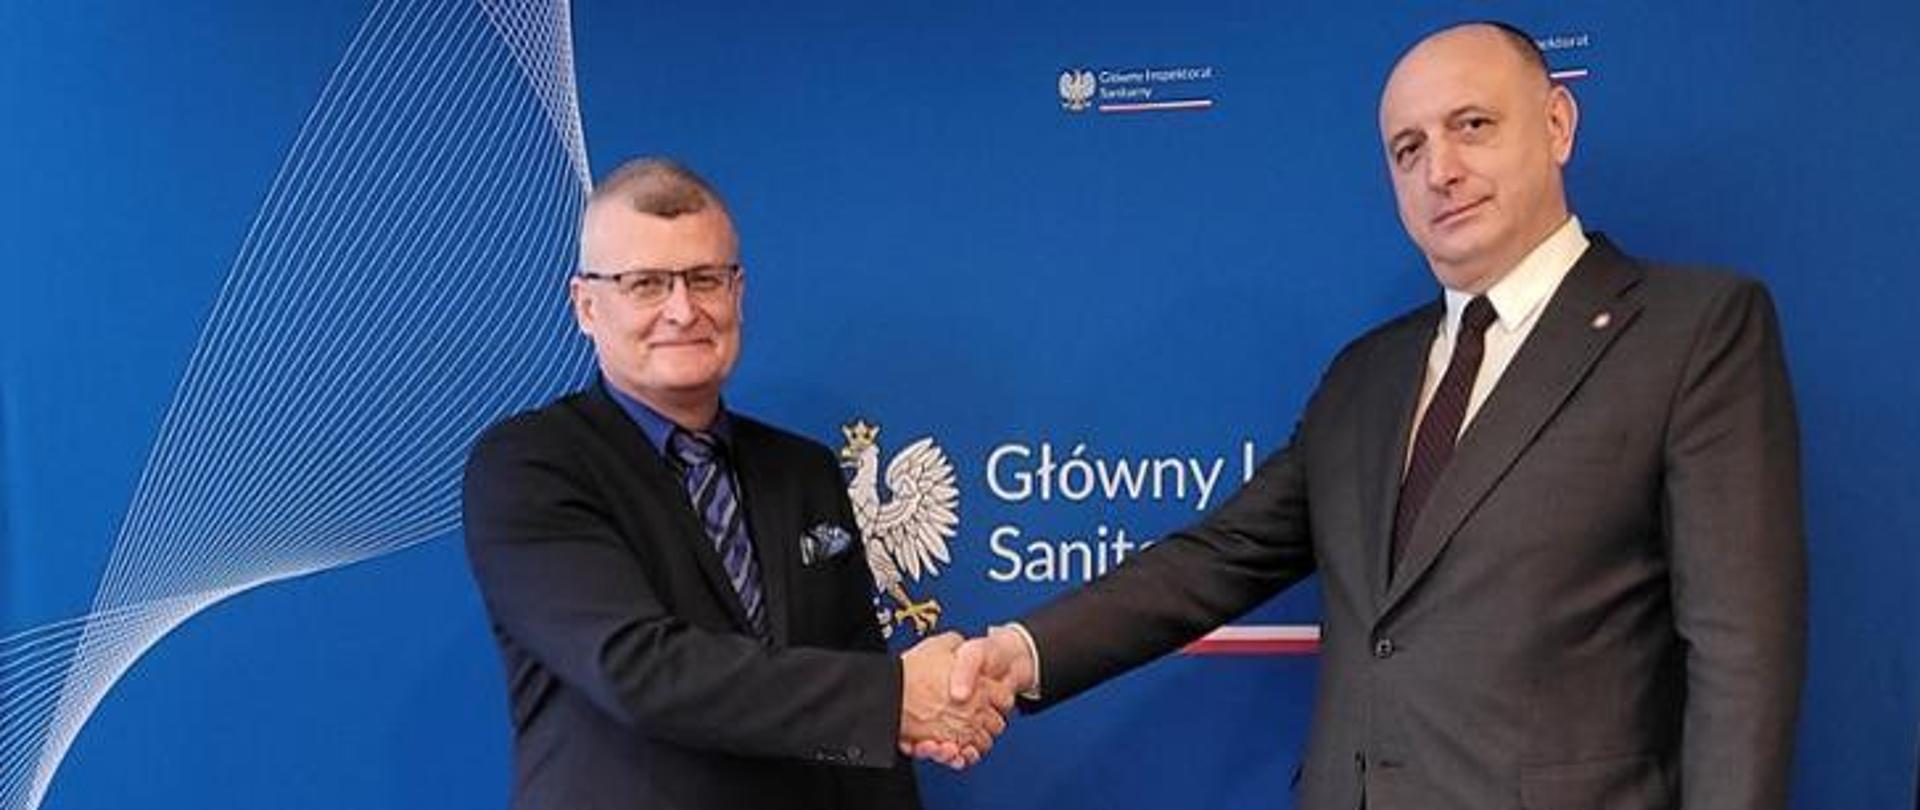 Nowy Główny Inspektor Sanitarny - Paweł Grzesiowski ściskający dłoń Krzysztofowi Saczce